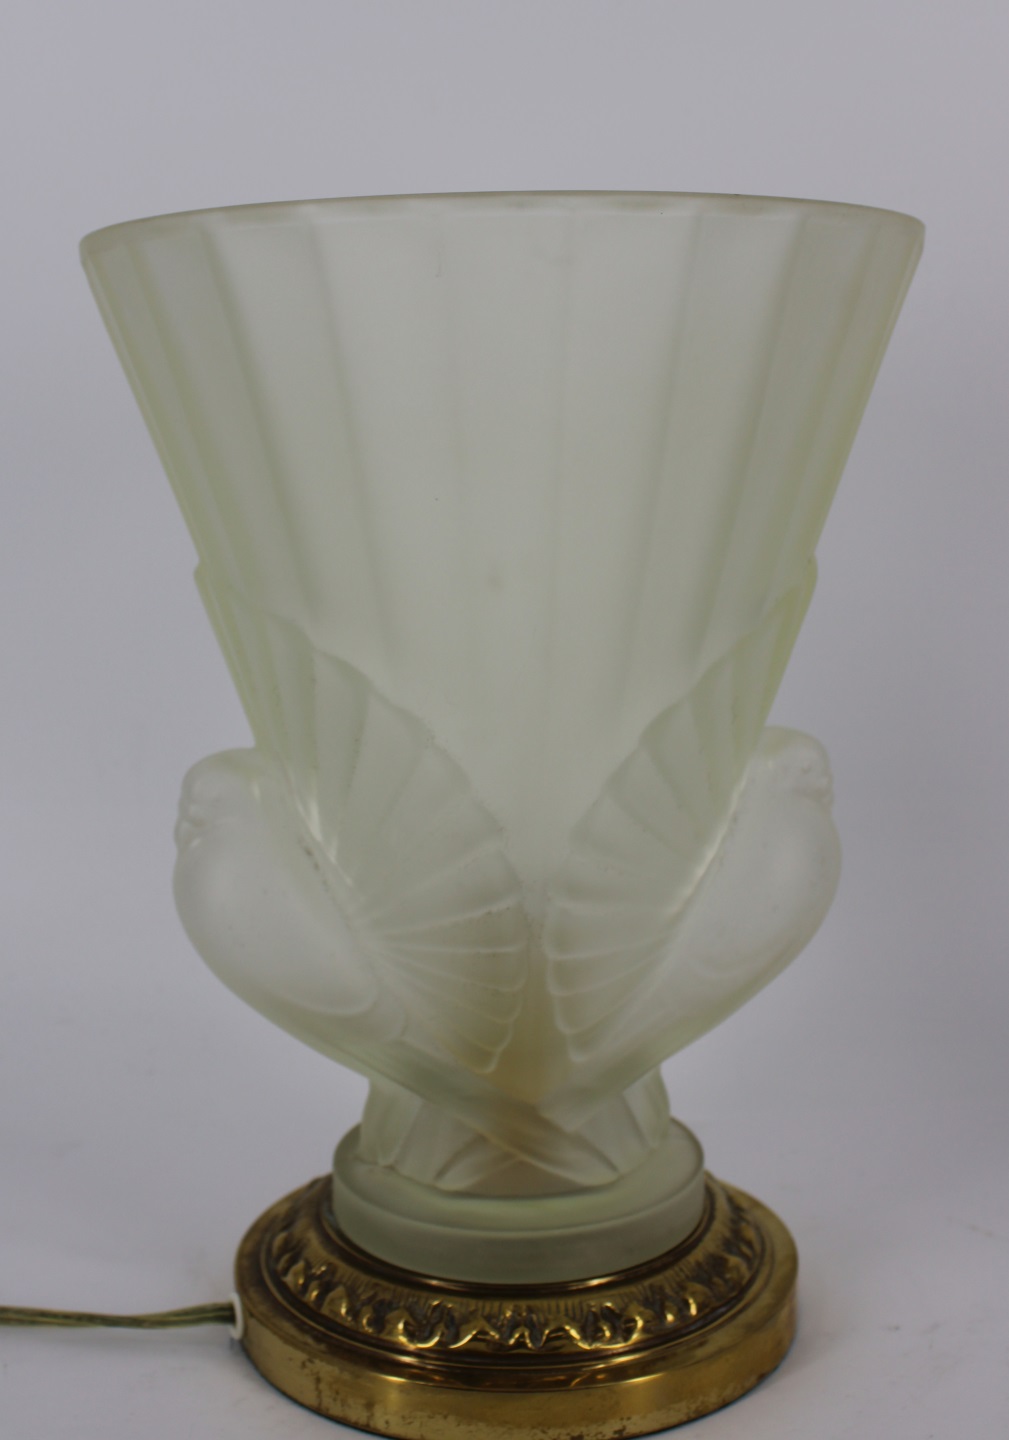 ART DECO LALIQUE STYLE GLASS LAMP